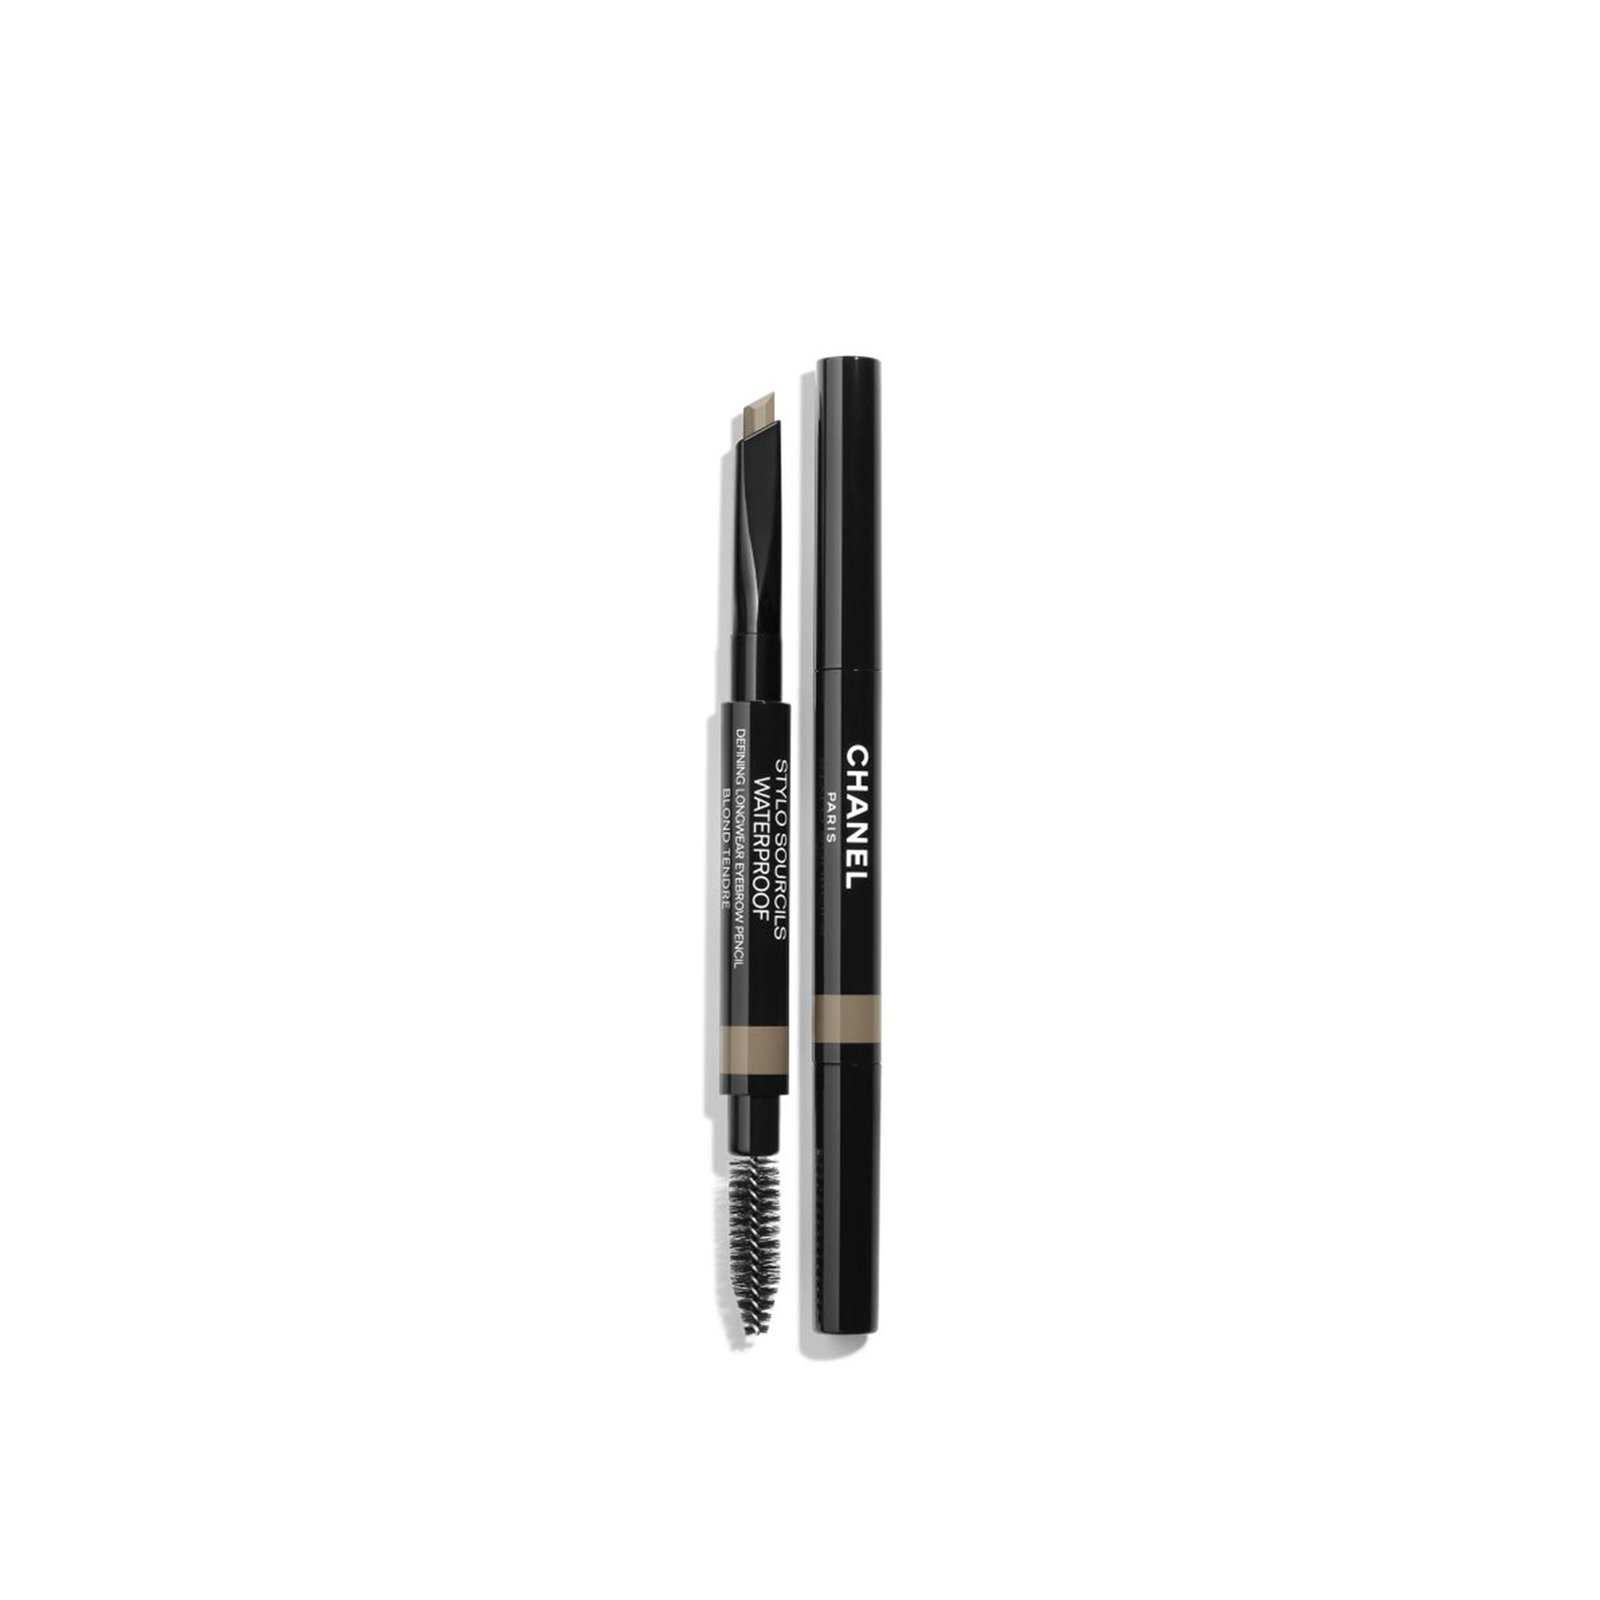 CHANEL Stylo Sourcils Waterproof Defining Longwear Eyebrow Pencil 806 Blond Tendre 0.27g (0.009oz)